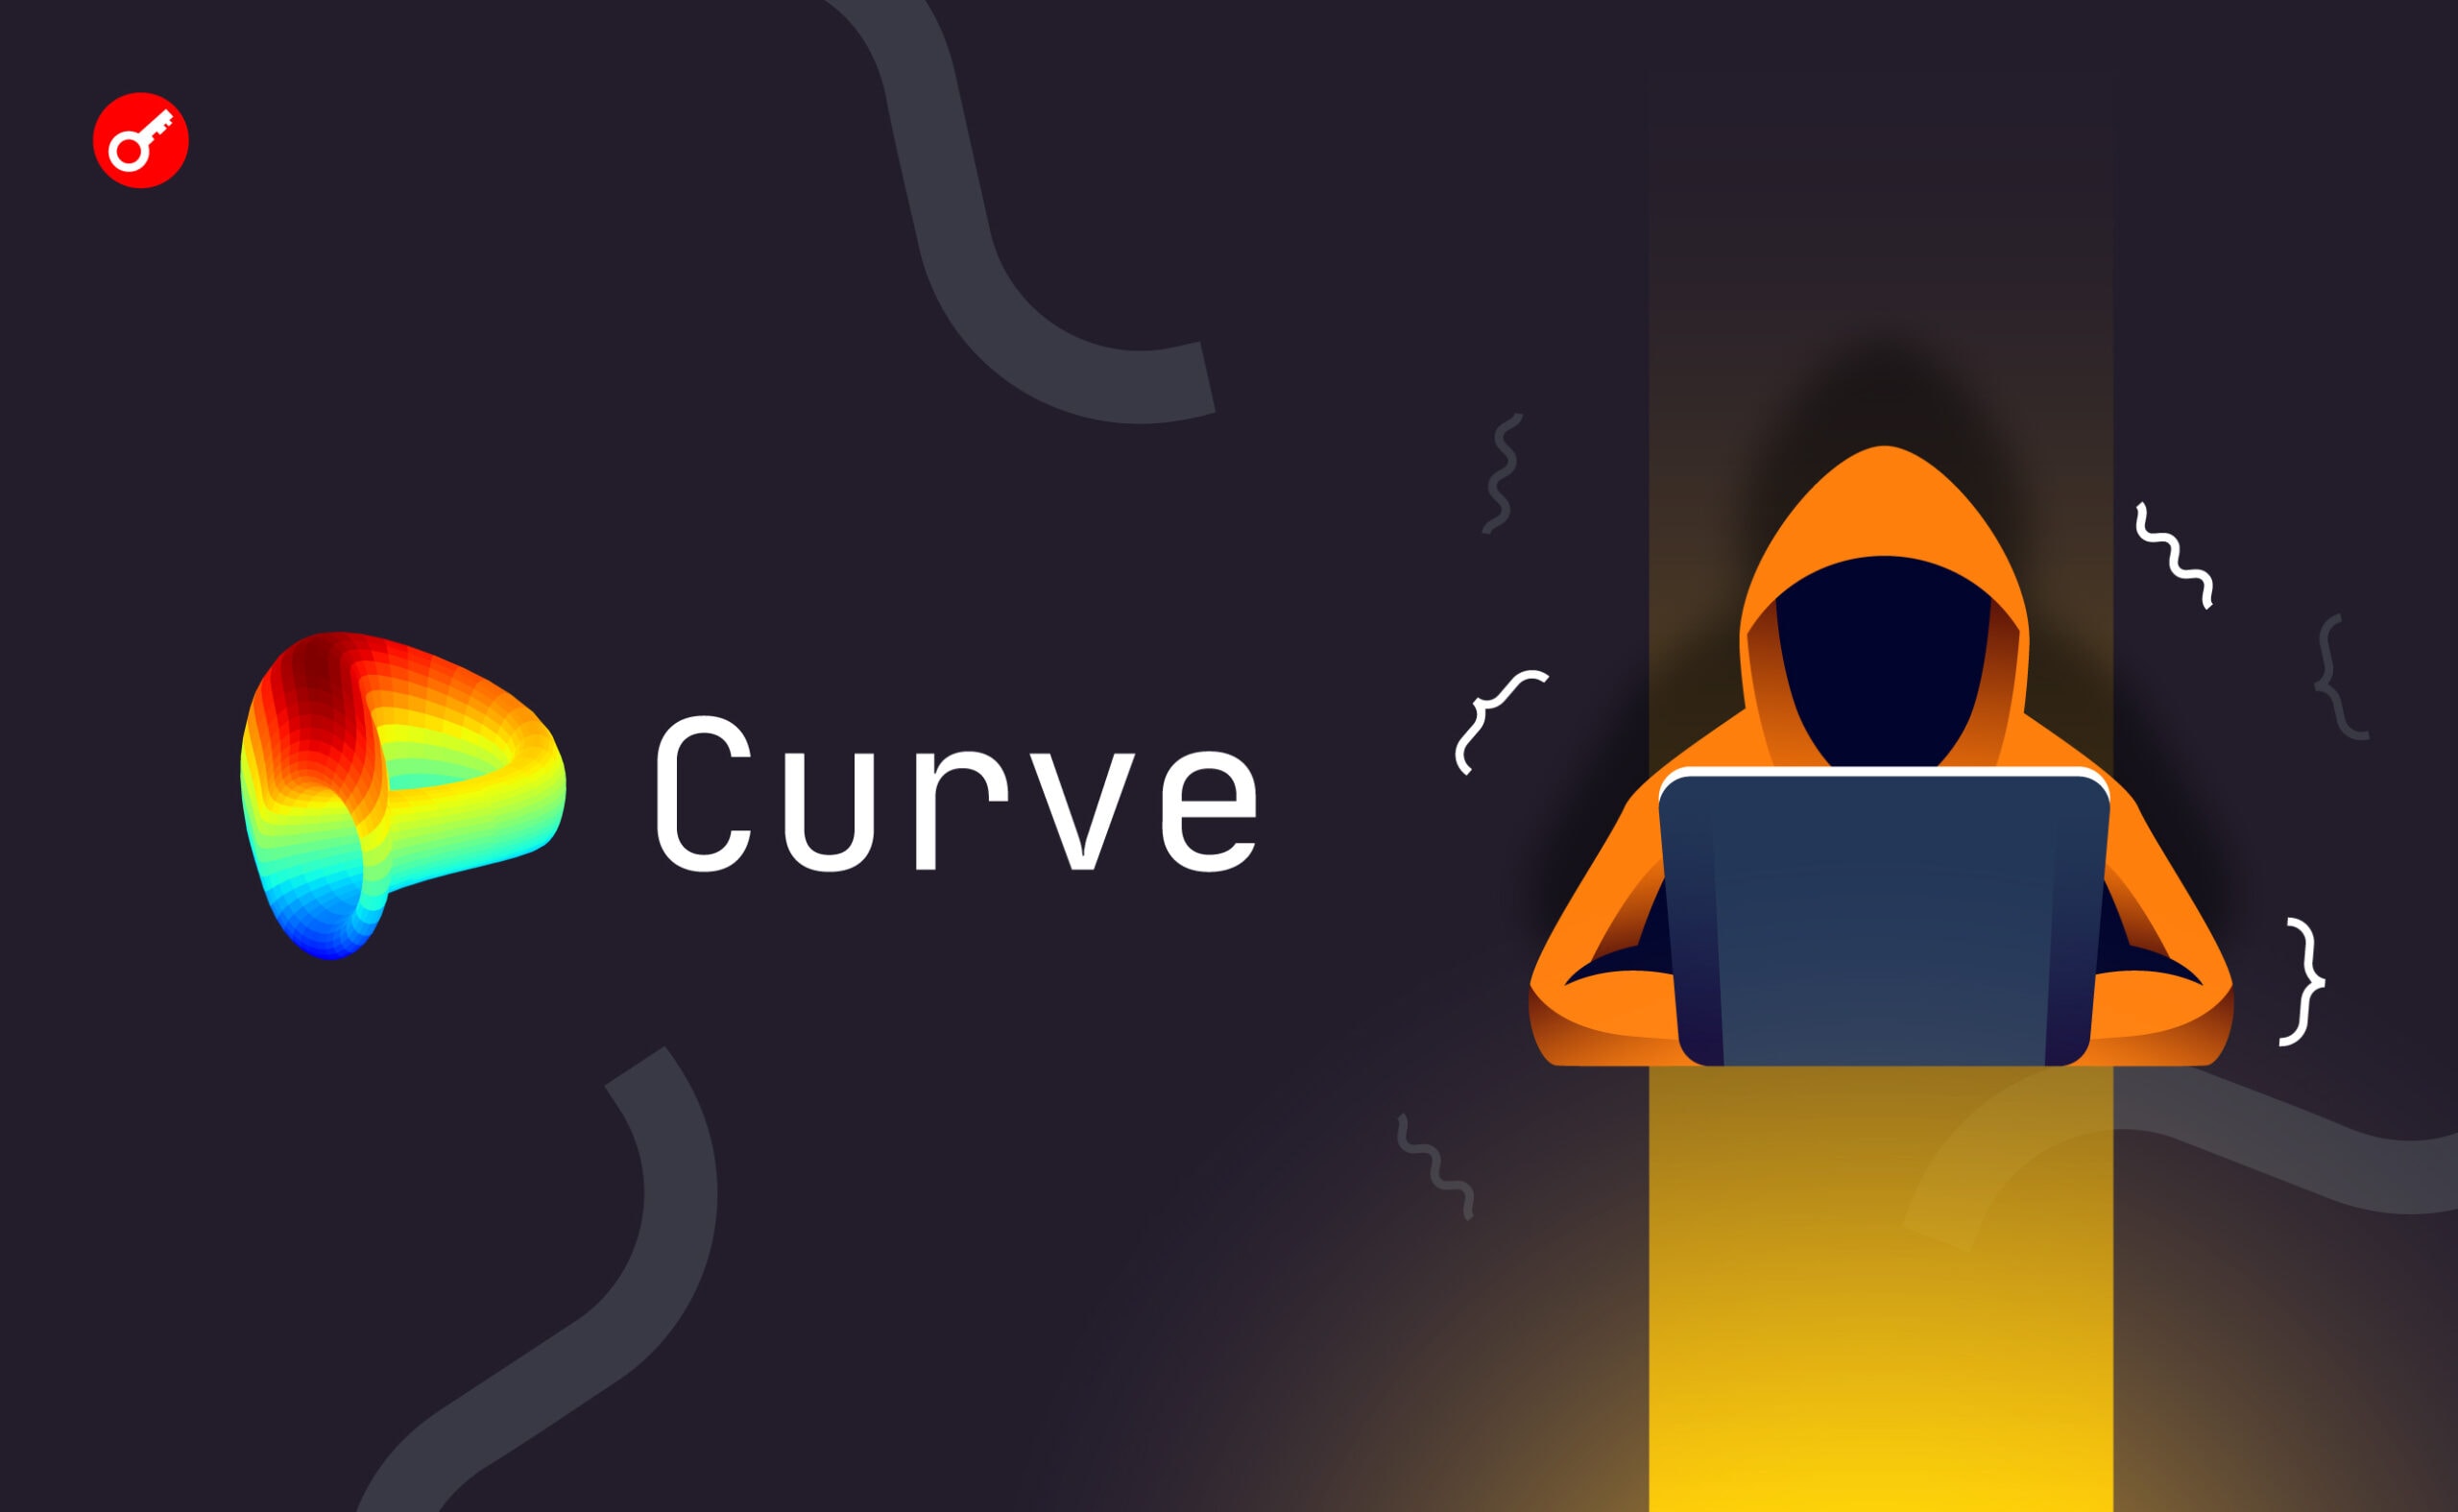 Curve Finance запропонувала хакерам повернути кошти за 10% винагороди. Головний колаж новини.